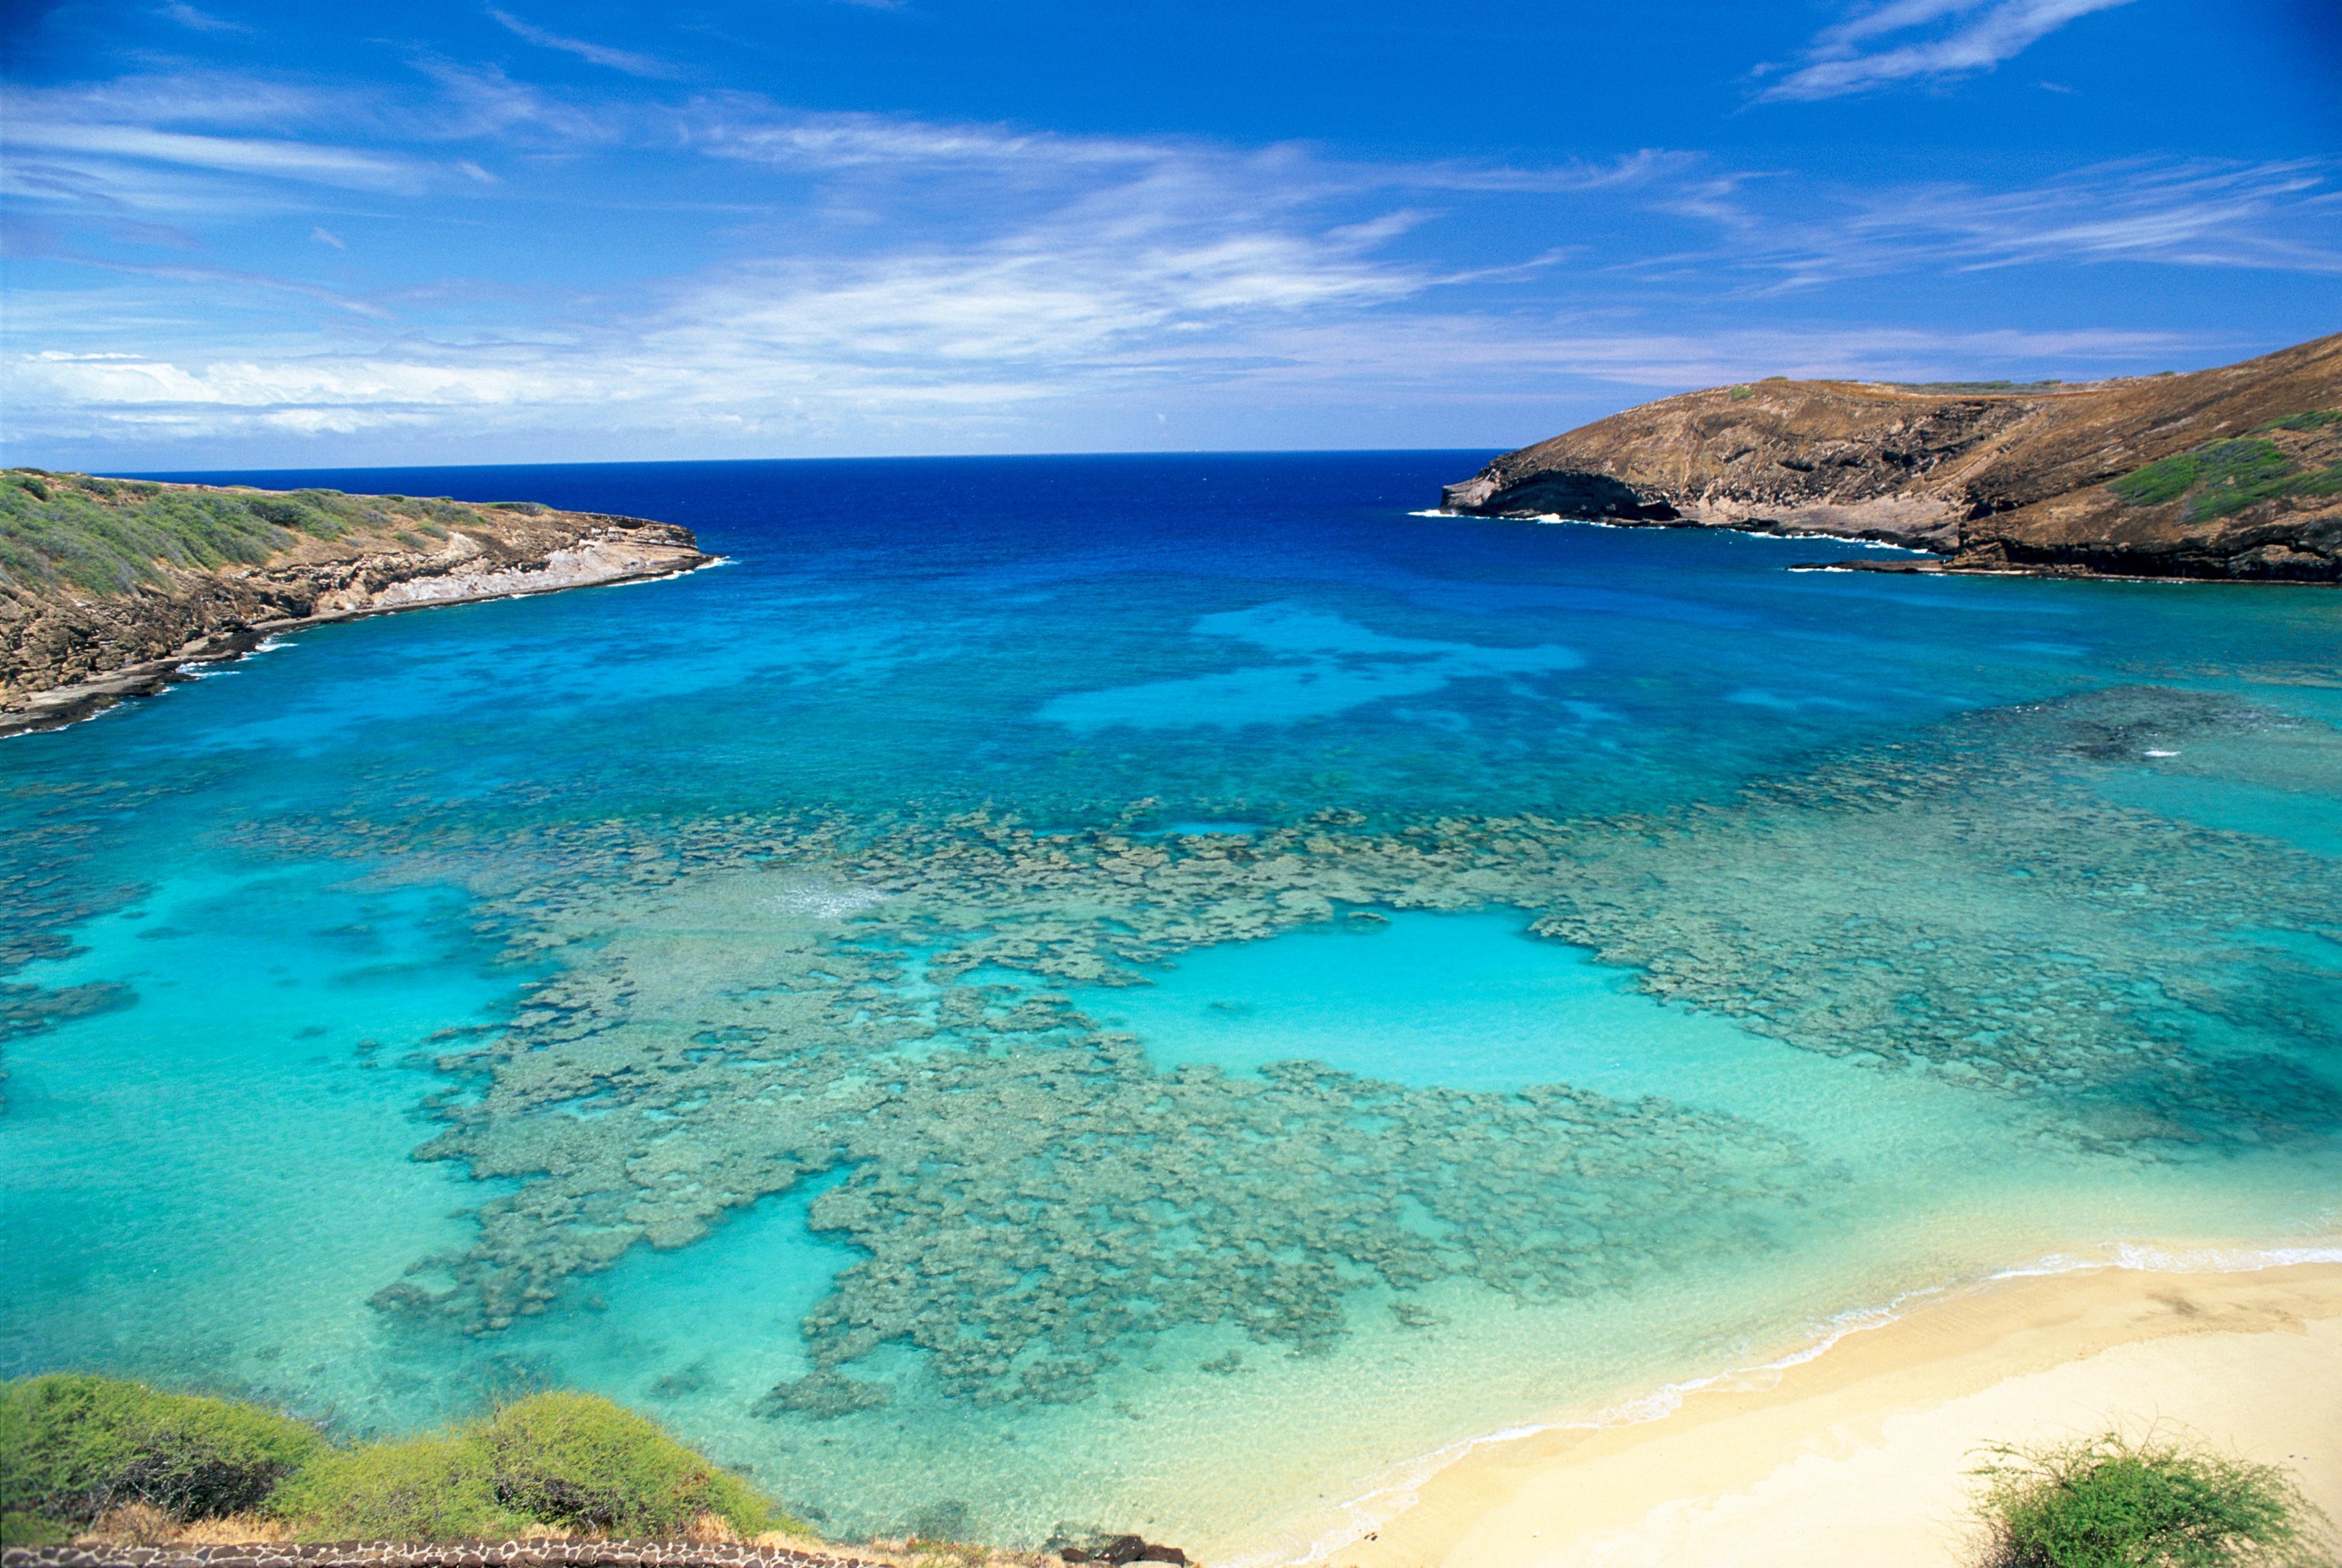 壁纸1680×1050夏威夷的碧海蓝天 Hawaii 夏威夷海滩图片 清澈海水波浪壁纸,夏威夷浪漫海滩壁纸图片-风景壁纸-风景图片素材-桌面壁纸